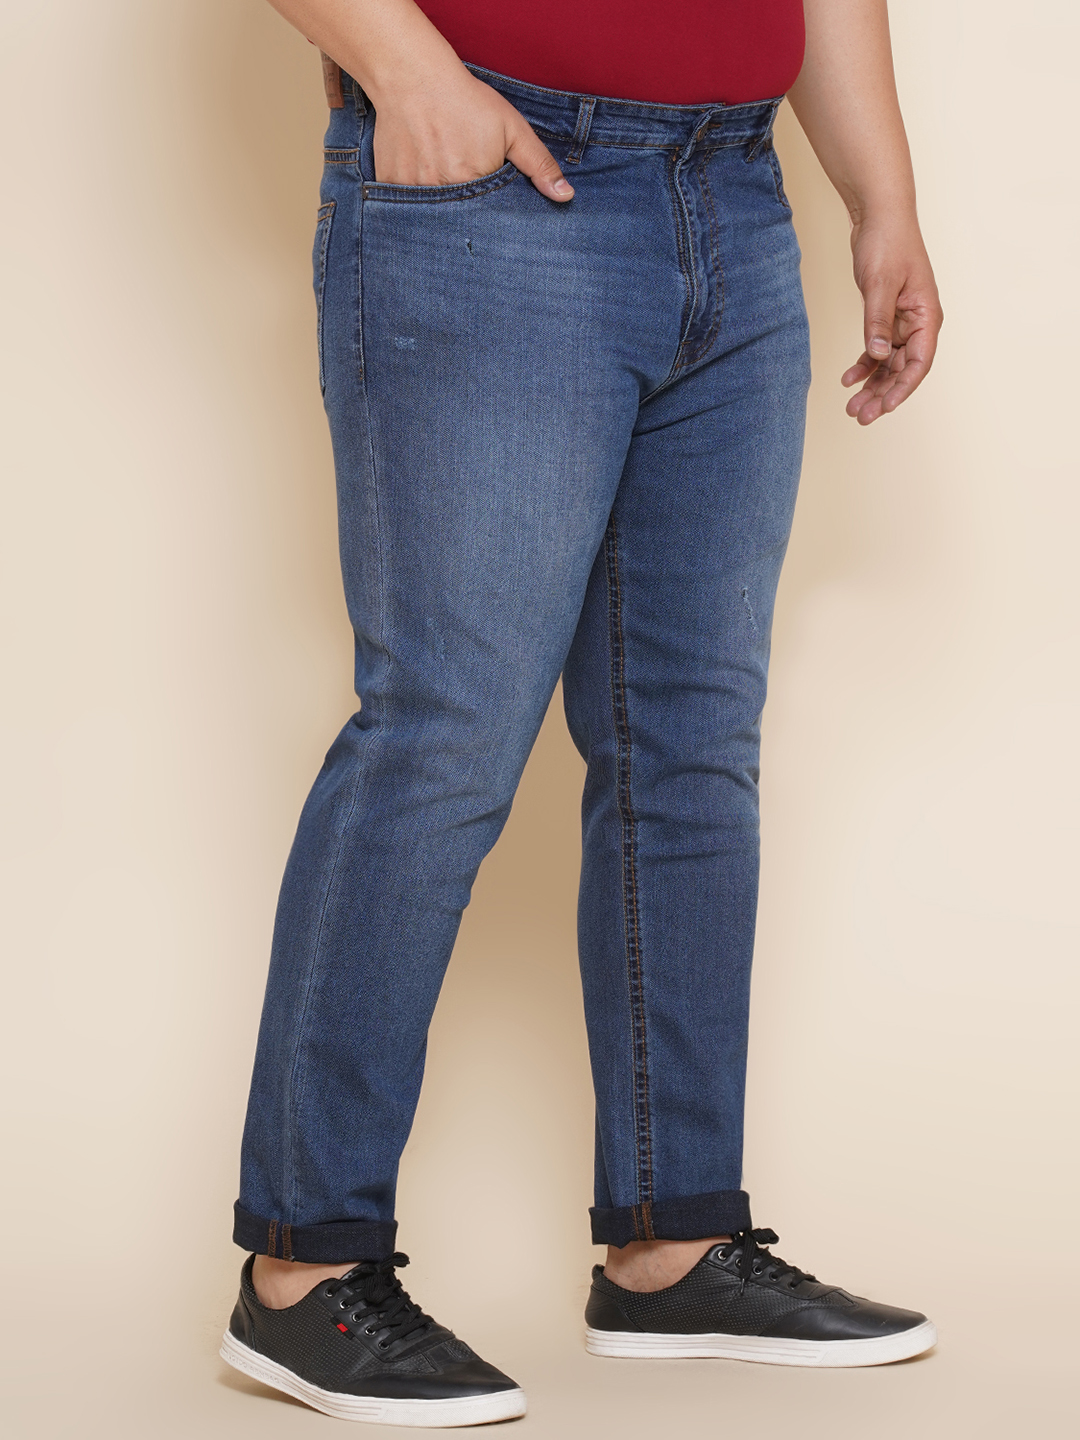 bottomwear/jeans/JPJ27017/jpj27017-3.jpg